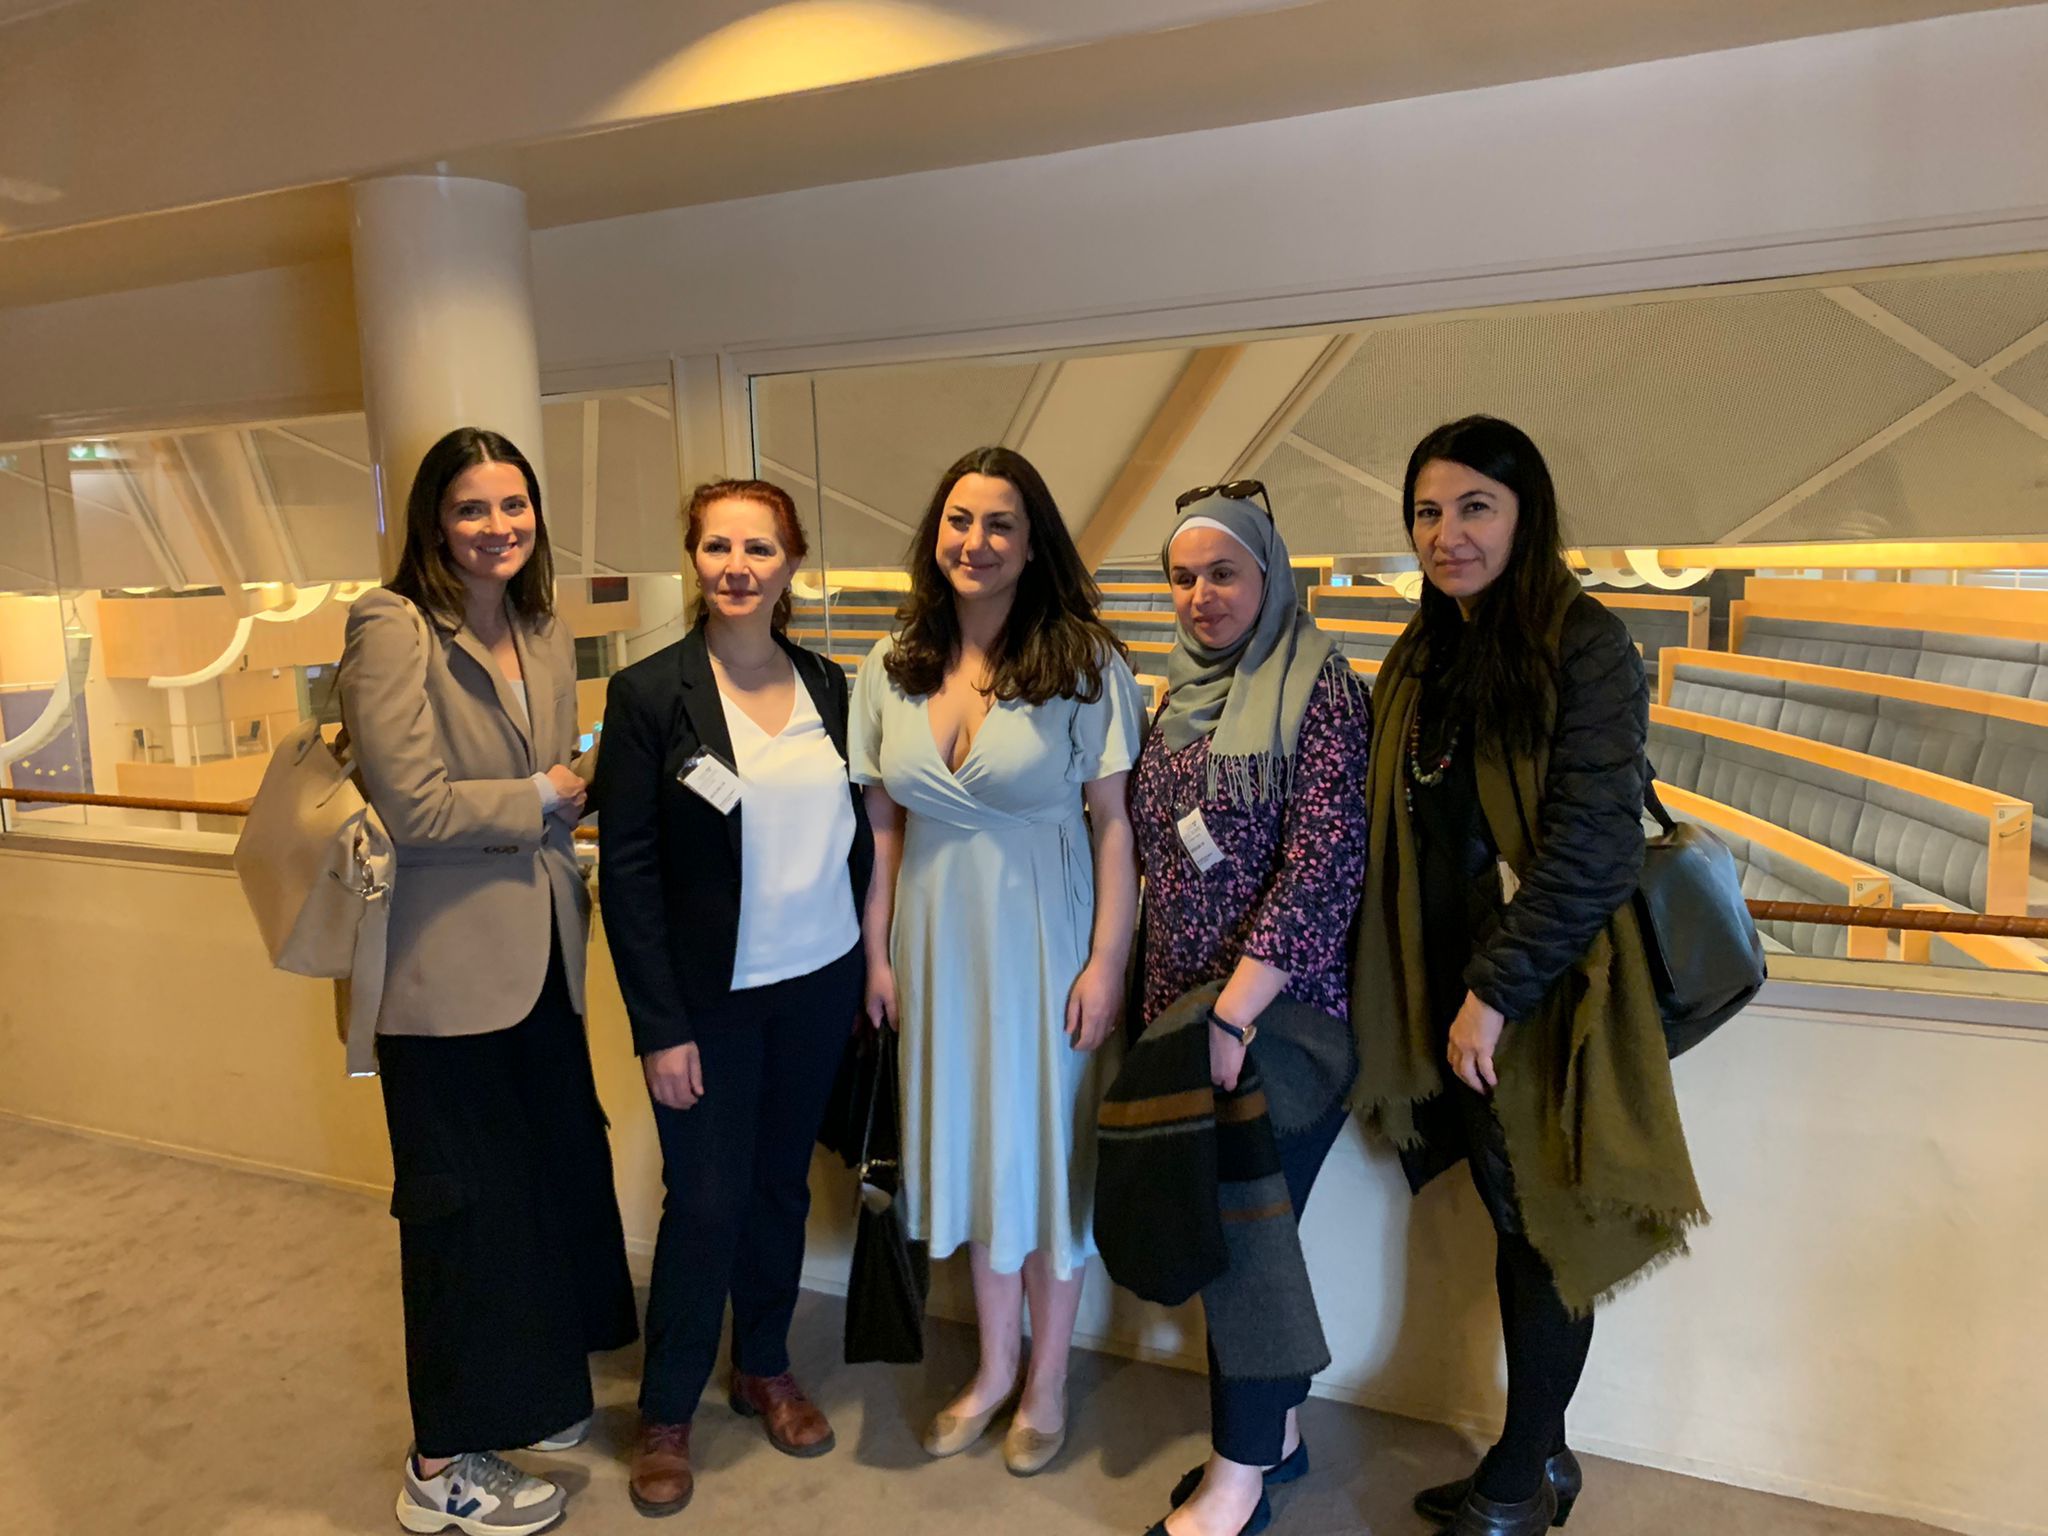 زيارة الحركة السياسية النسوية السورية إلى السويد ضمن برنامج “القرار للنساء”